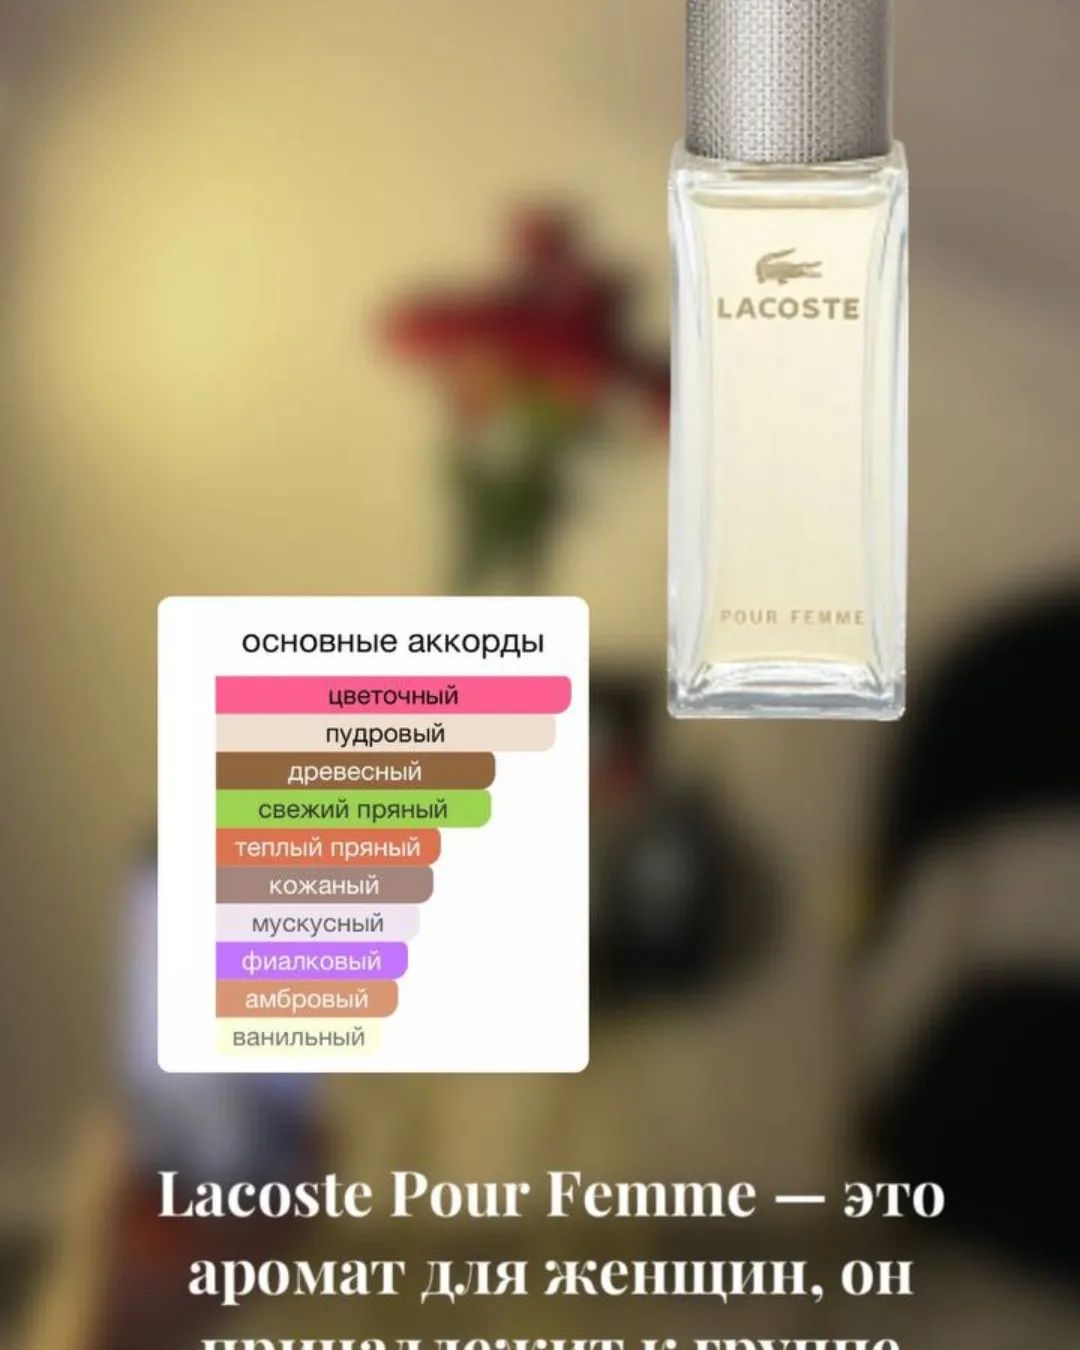 Французский парфюм на разлив